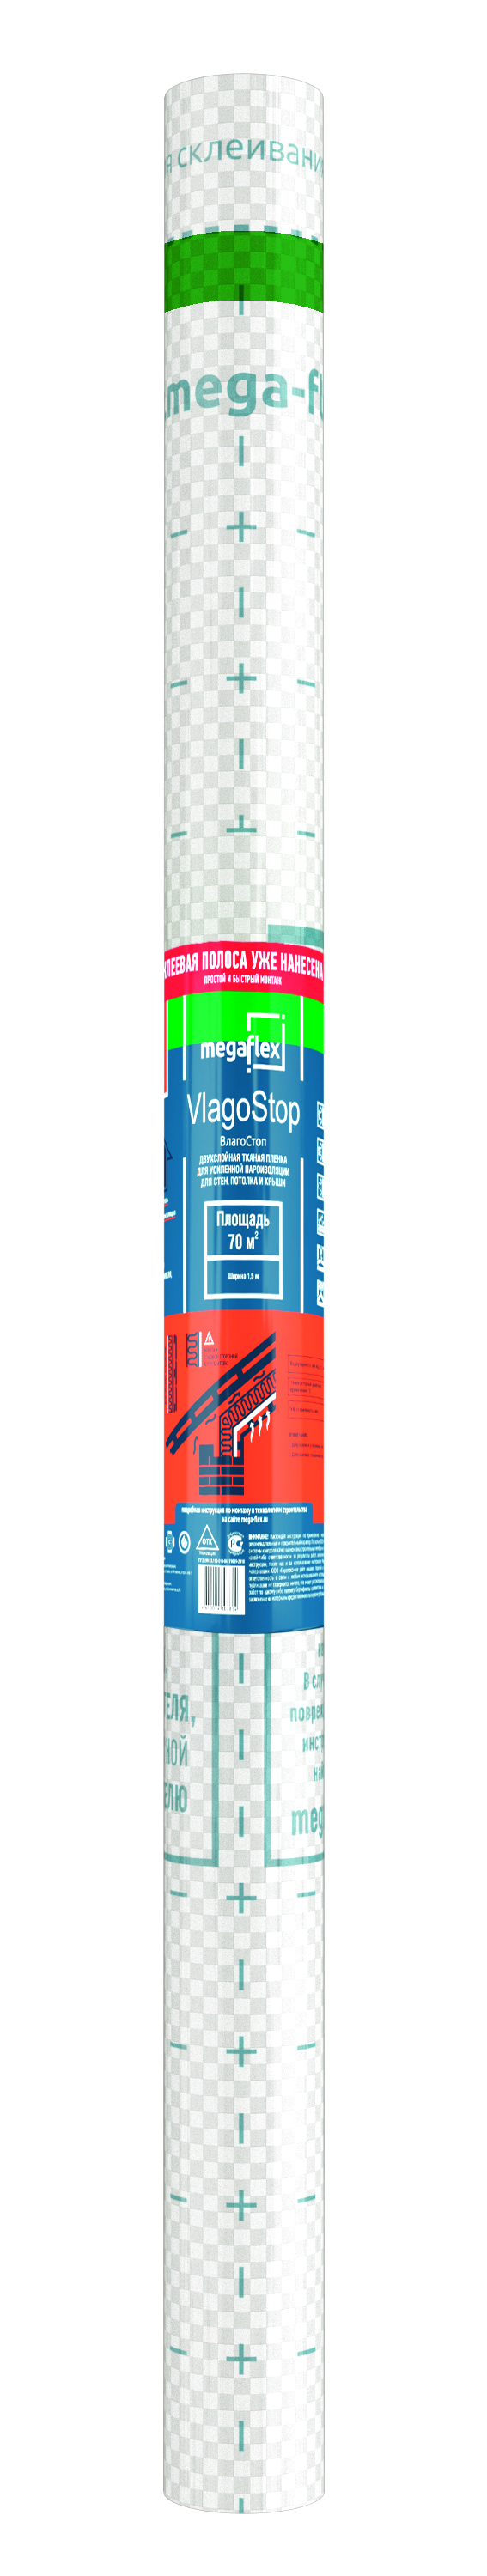 Гидро-пароизоляционная пленка Megaflex VlagoStop, двухслойная, ширина 1,5 м, 70 м? гидро пароизоляционная пленка megaflex